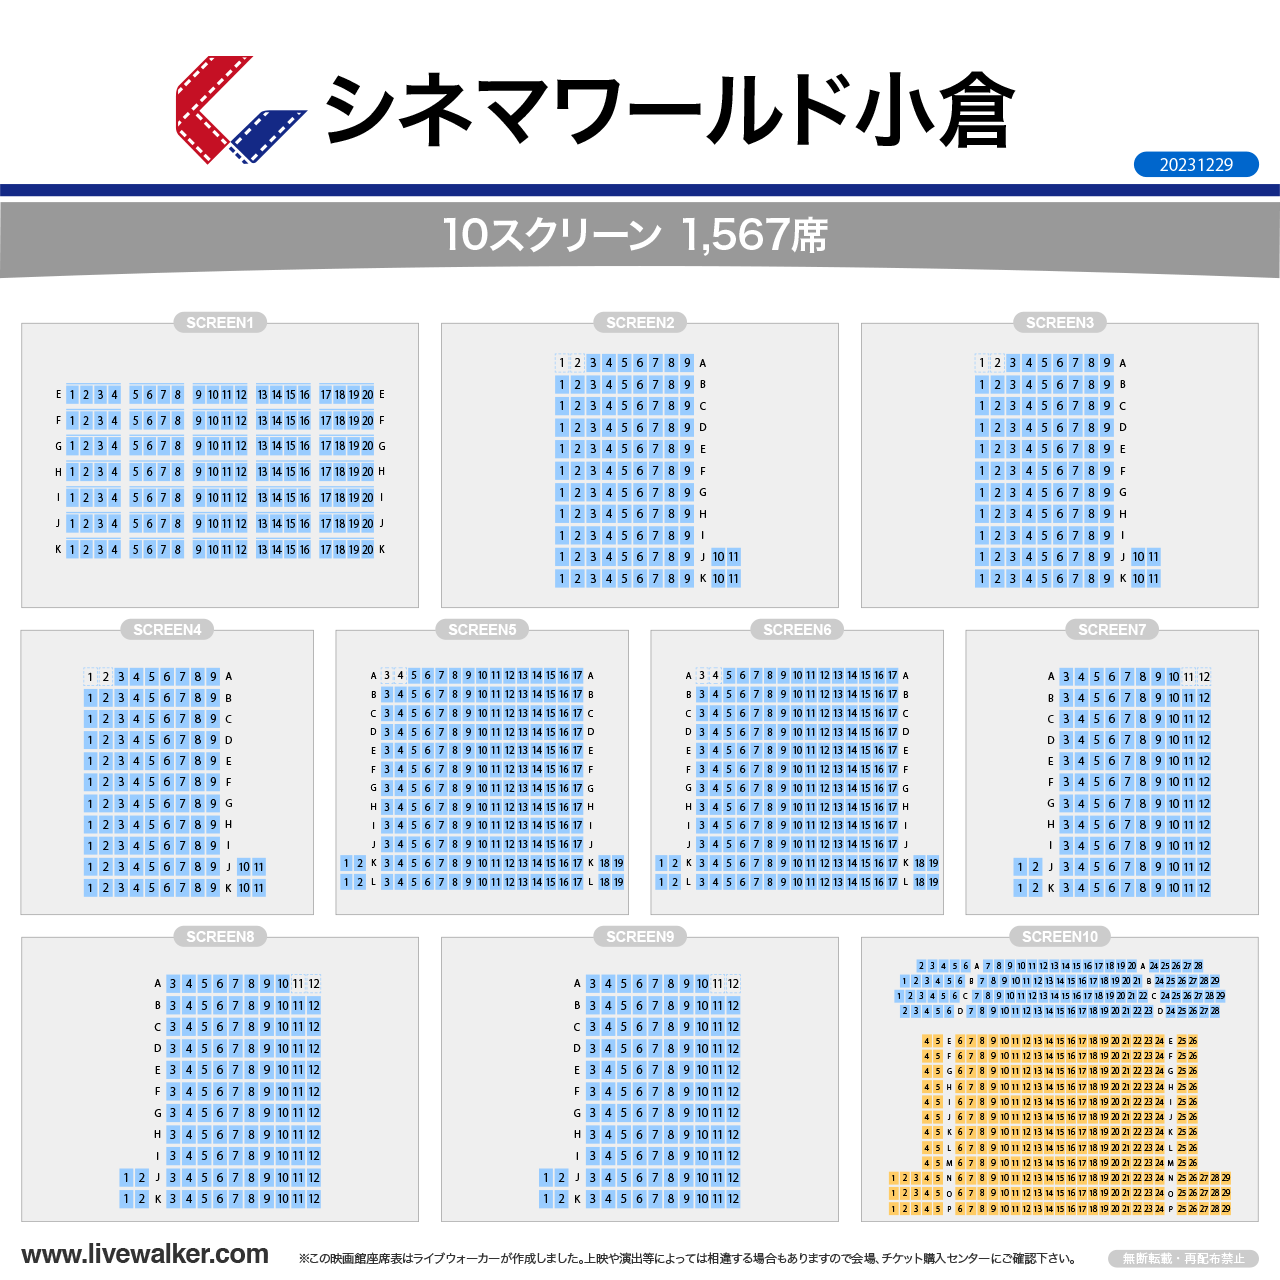 小倉コロナシネマワールドスクリーンの座席表